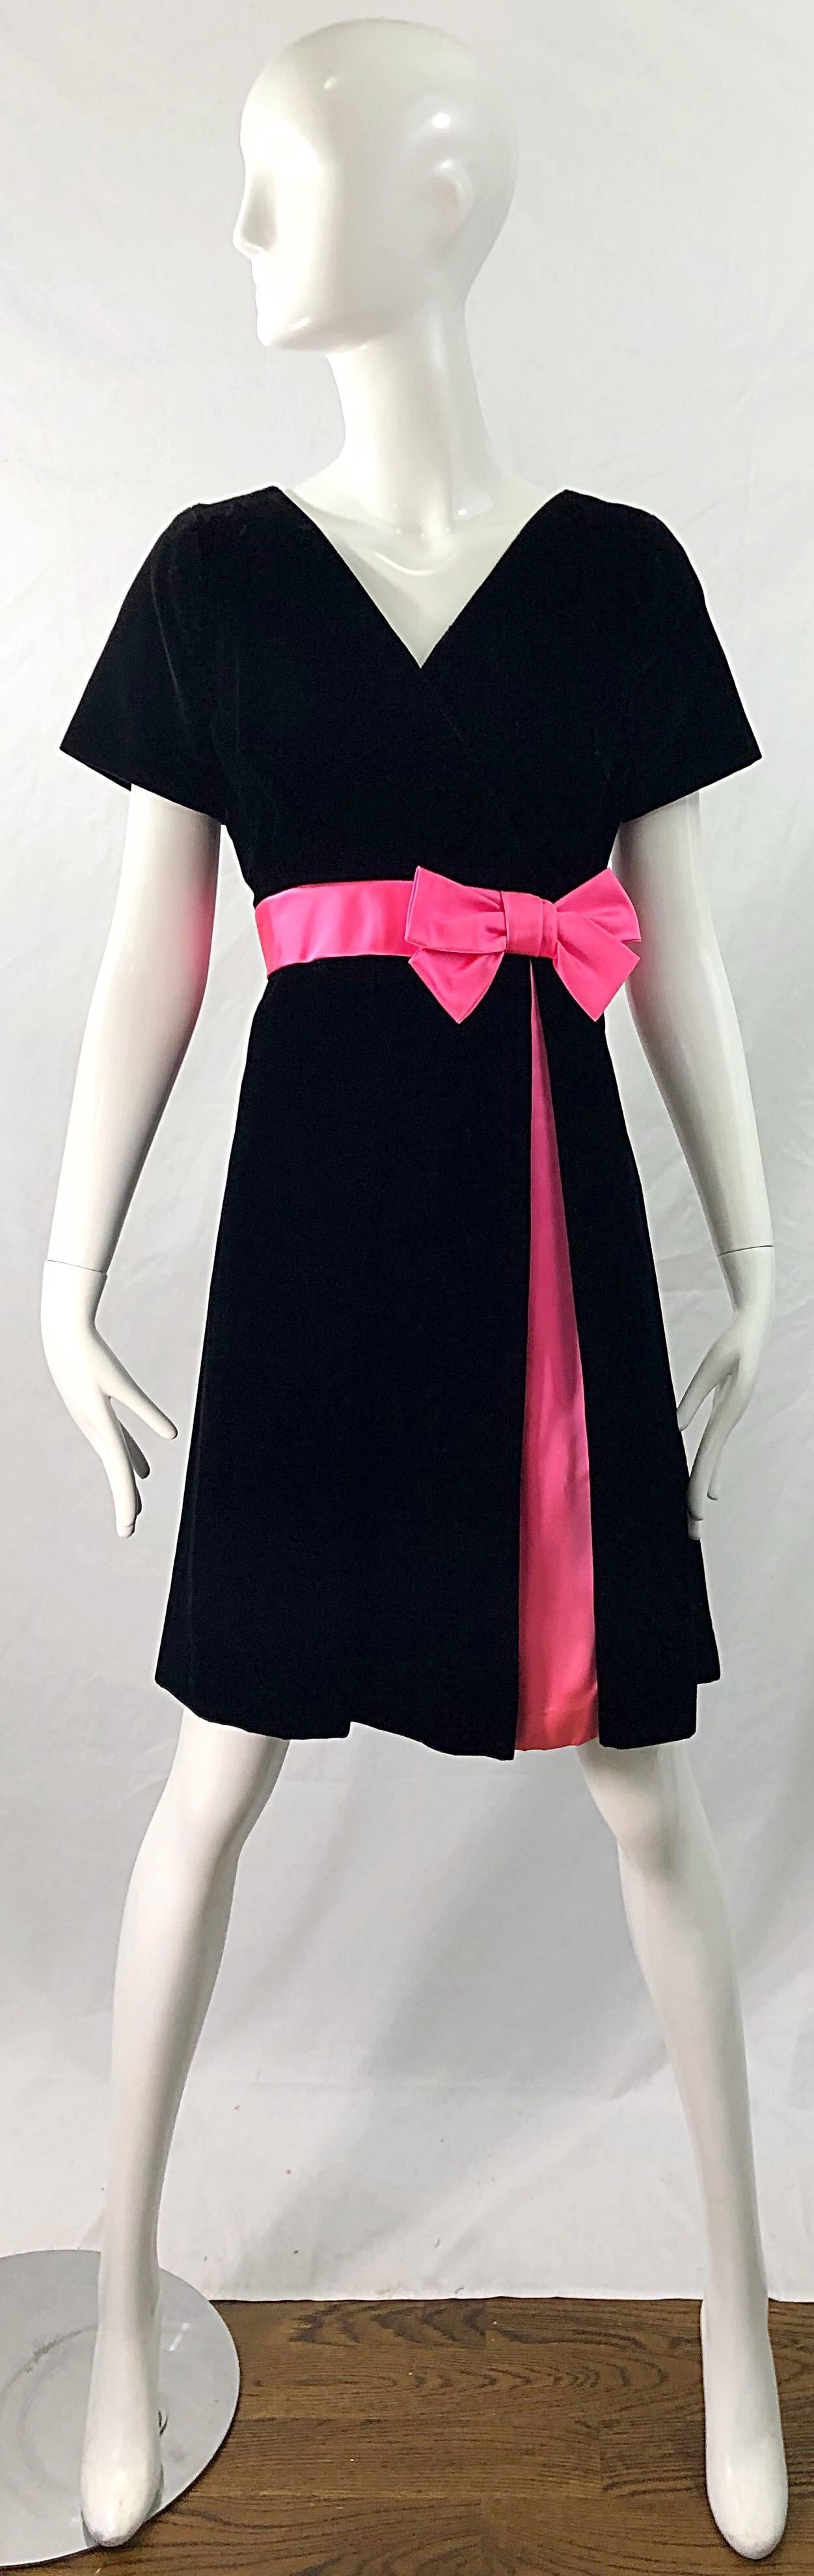 Wunderschönes 1950er Demi Couture Kleid aus schwarzem Samt und pinkfarbener Seide mit Schlaghose! Mit maßgeschneidertem Mieder und vollem Rock. Pinke Schleife an der linken Seite. Ein passender rosafarbener Stoff ragt auch an der Seite des Rocks